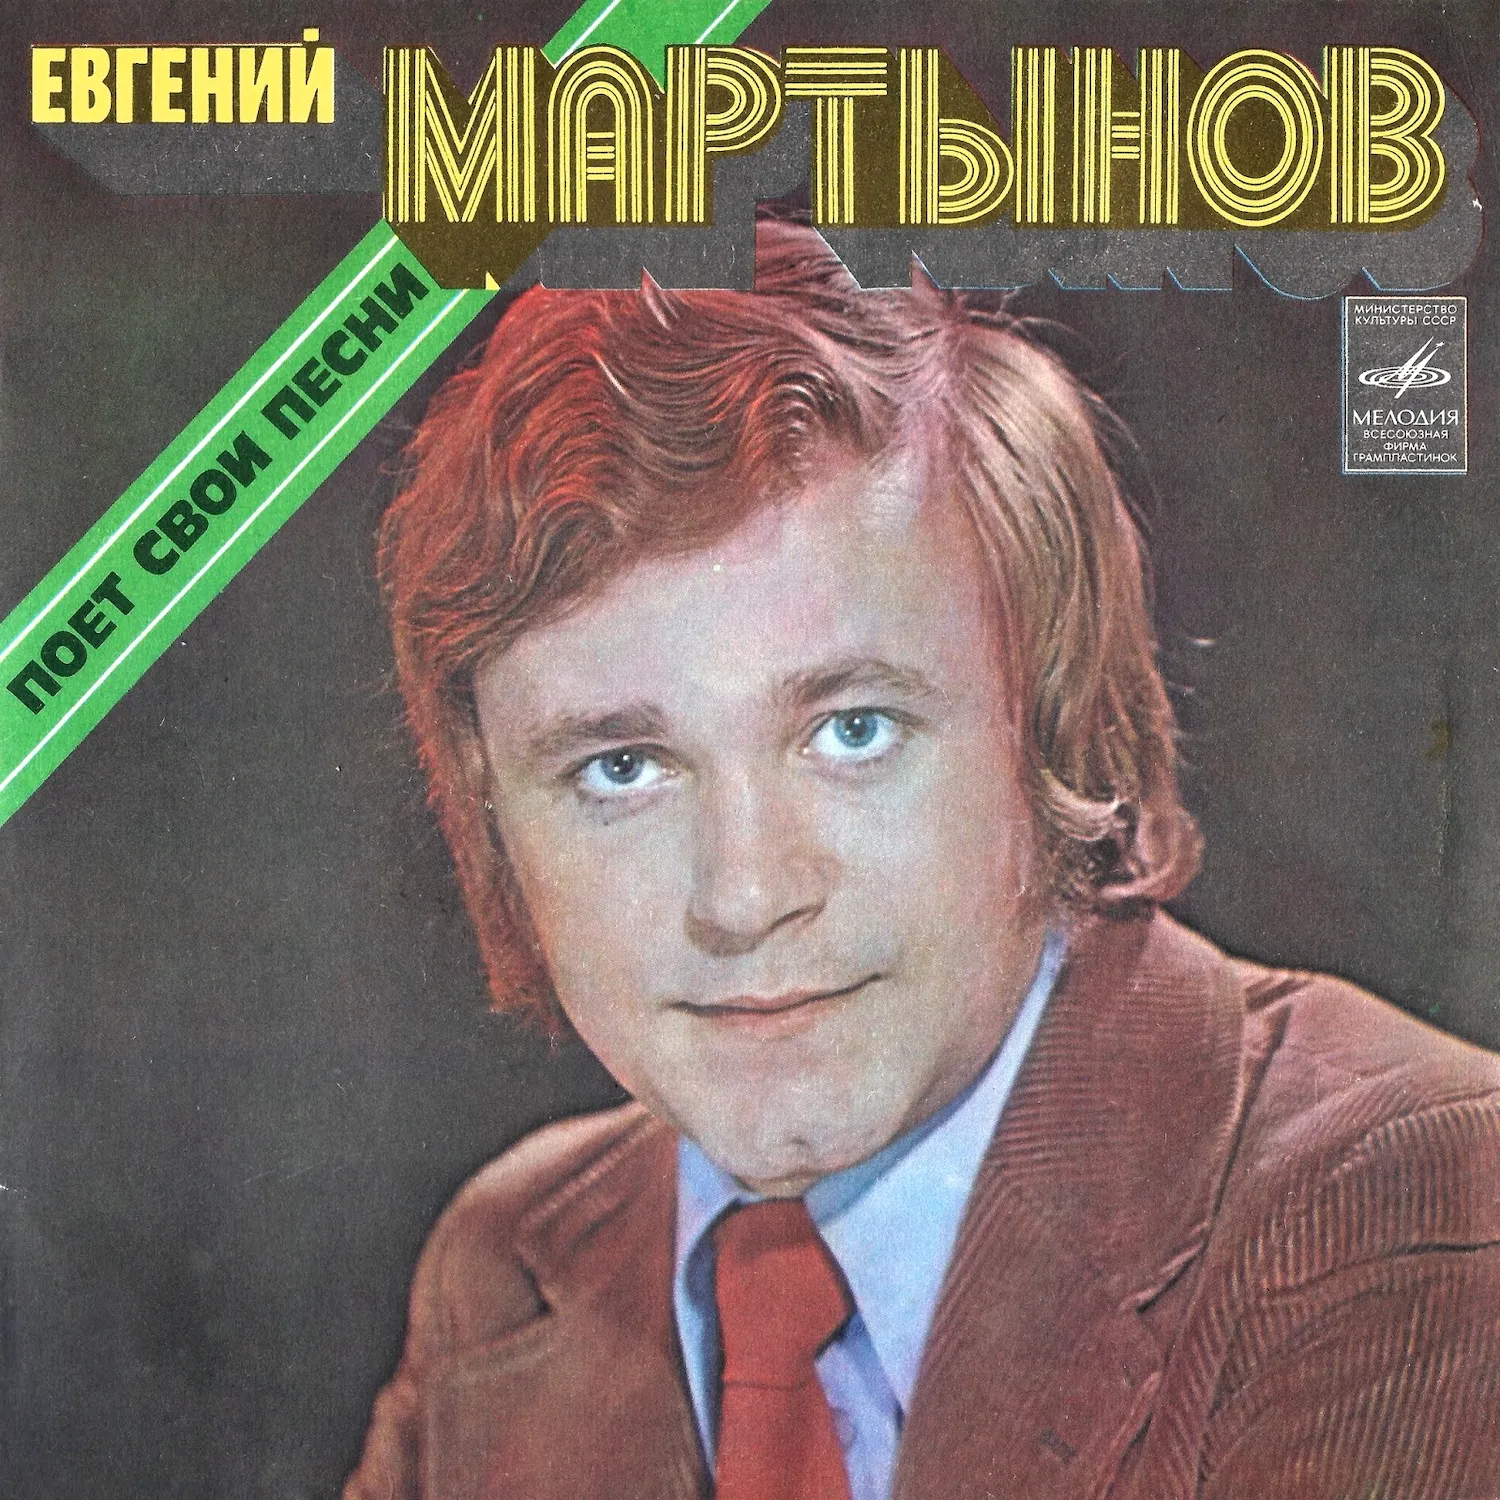 Евгений Мартынов